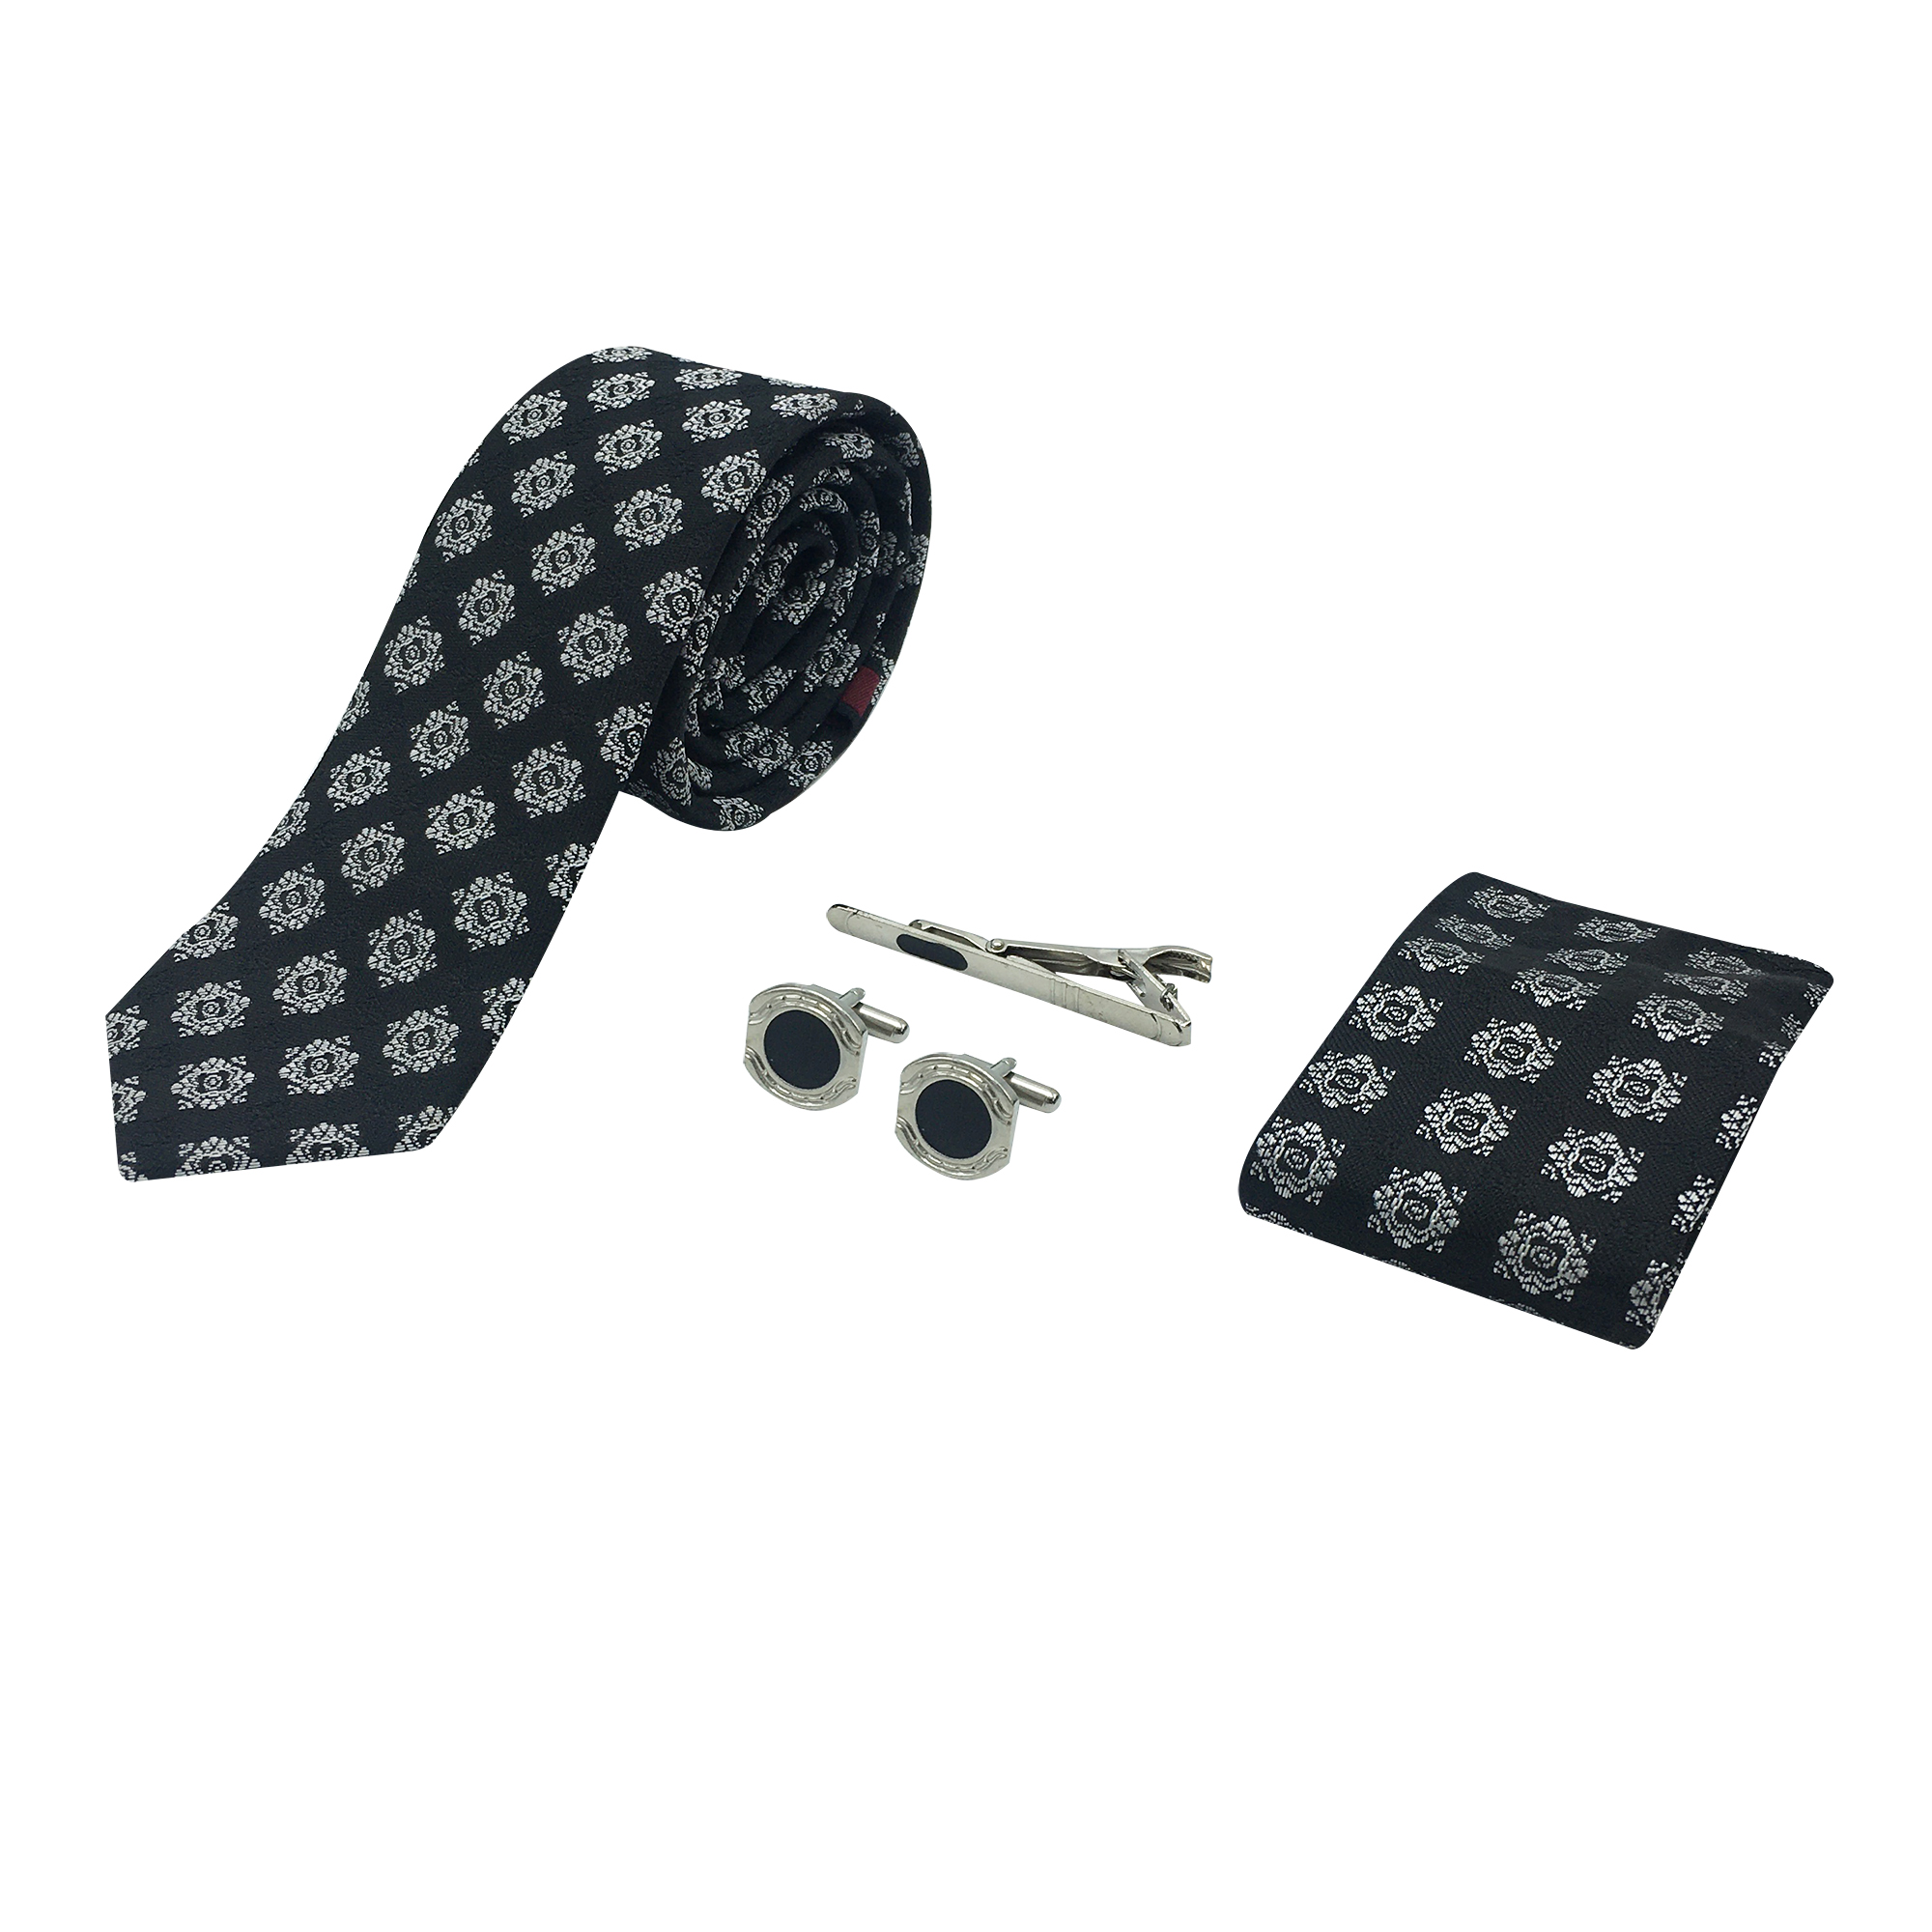 ست کراوات و گیره کراوات و دستمال جیب و دکمه سردست مردانه مدل 7070